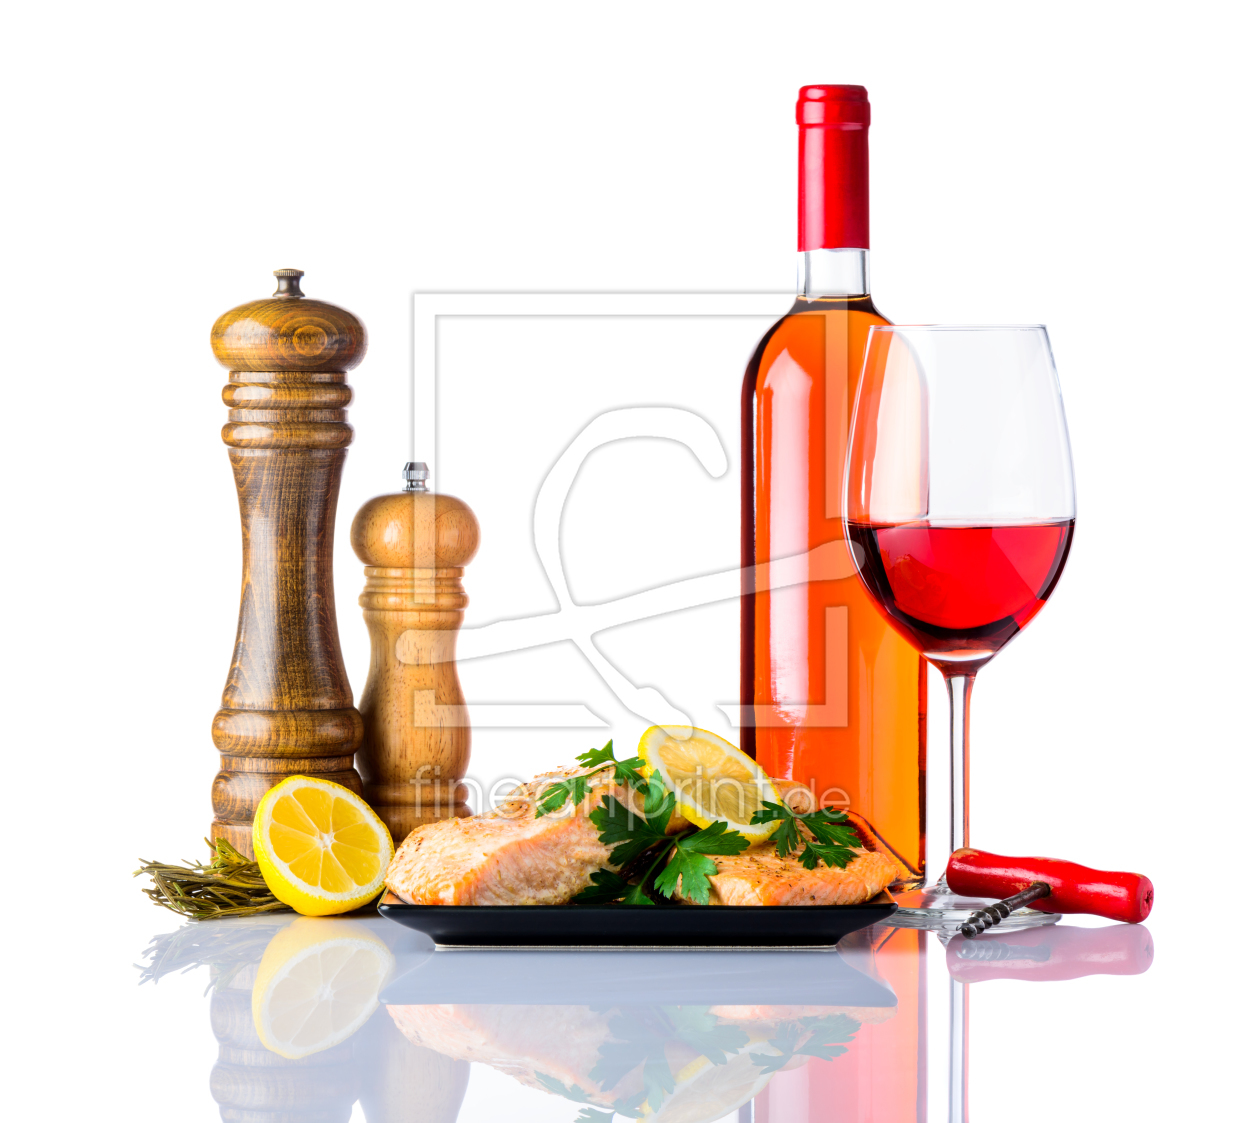 Bild-Nr.: 11829027 Gebackener Fisch mit Rosewein auf Weiß erstellt von xfotostudio